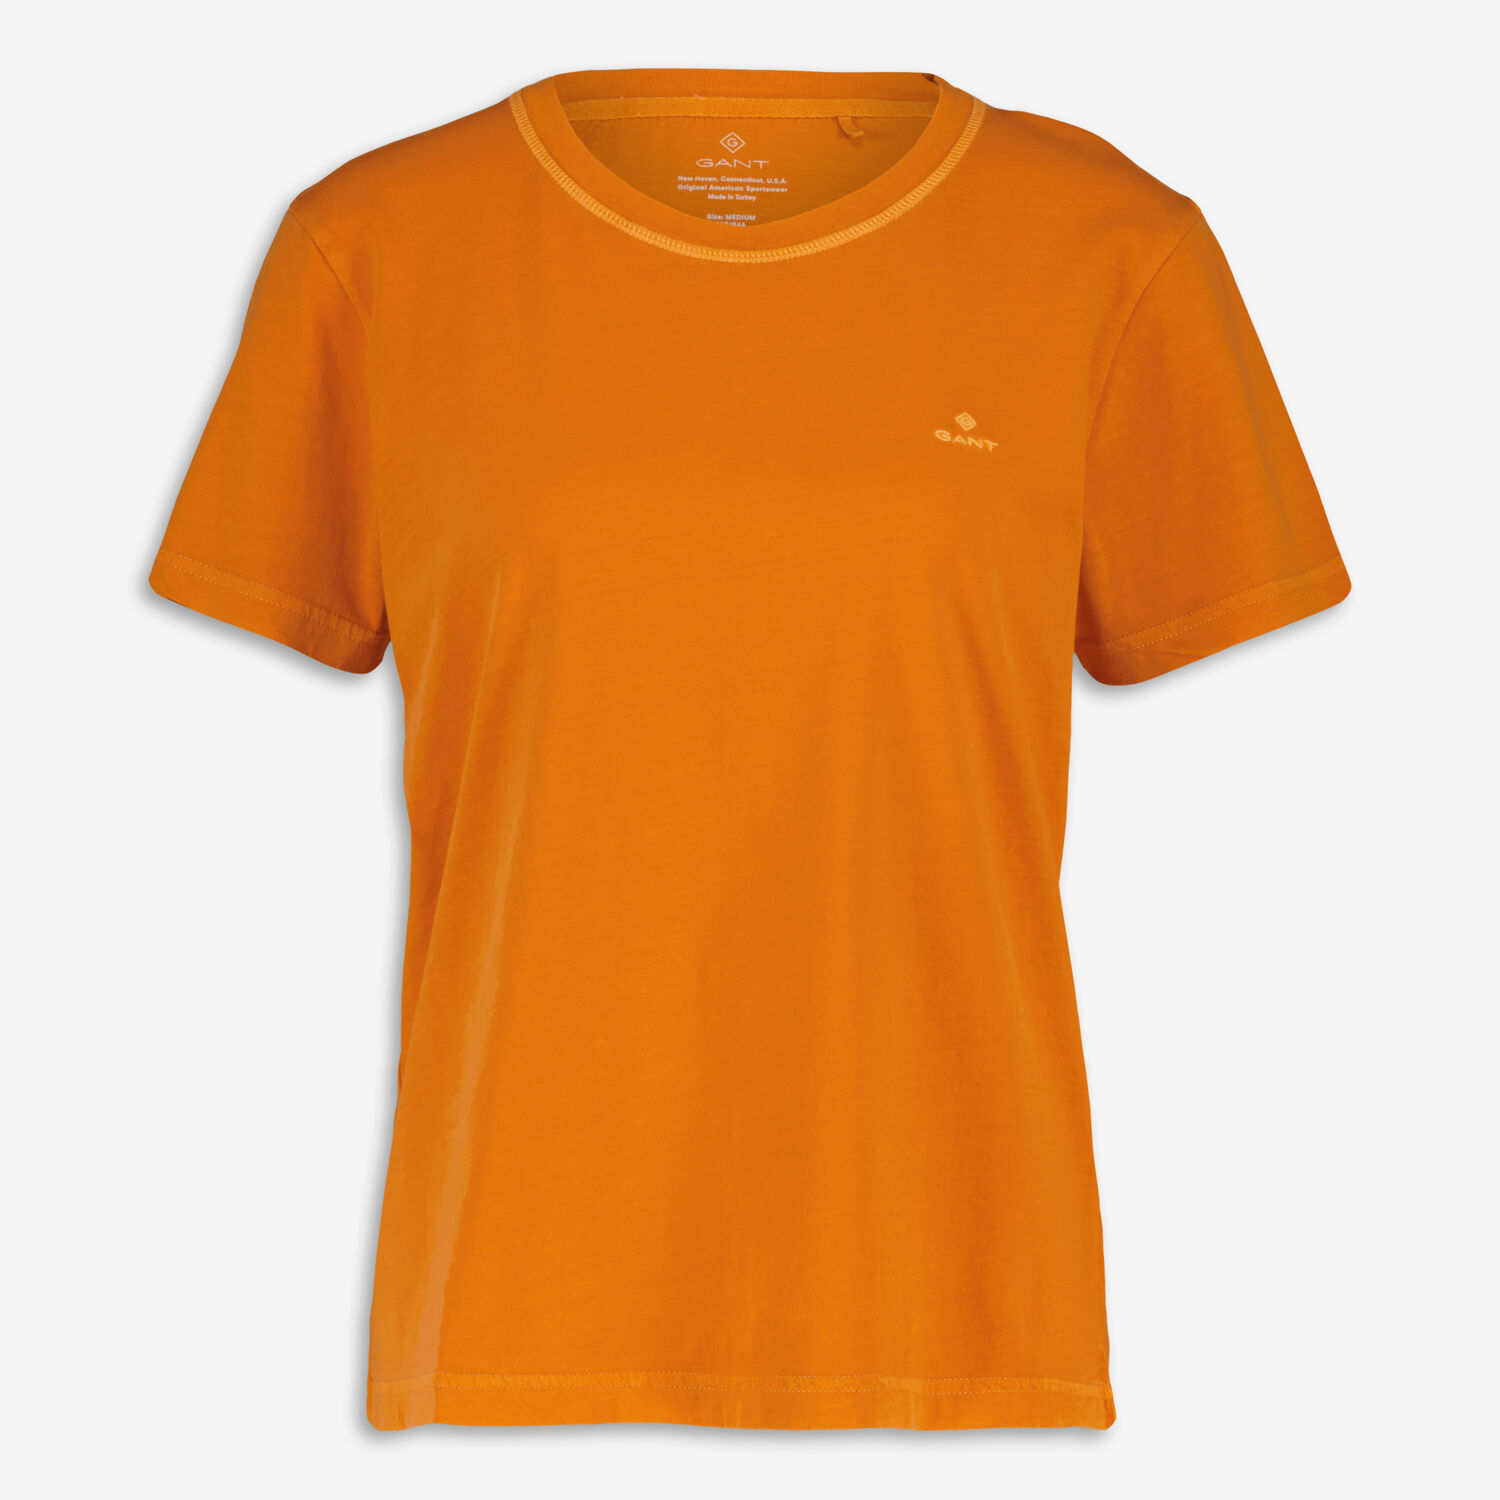 Оранжевая футболка с вышитым логотипом Gant